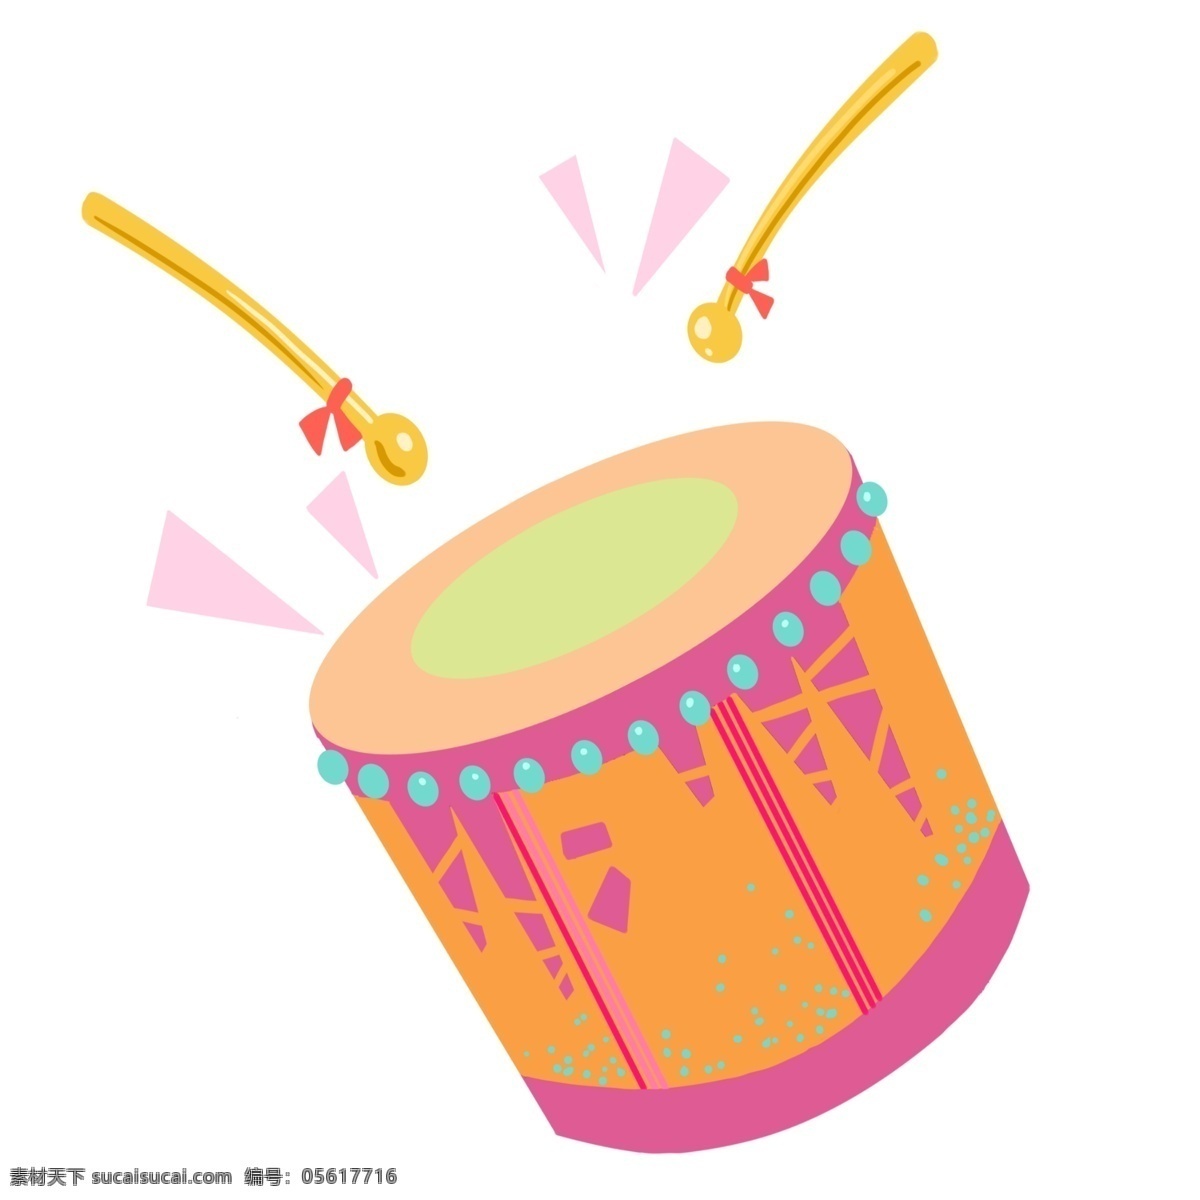 敲击 乐器 大鼓 插画 红色的大鼓 敲击的大鼓 卡通插画 乐器插画 表演乐器 演奏乐器 中国风乐器